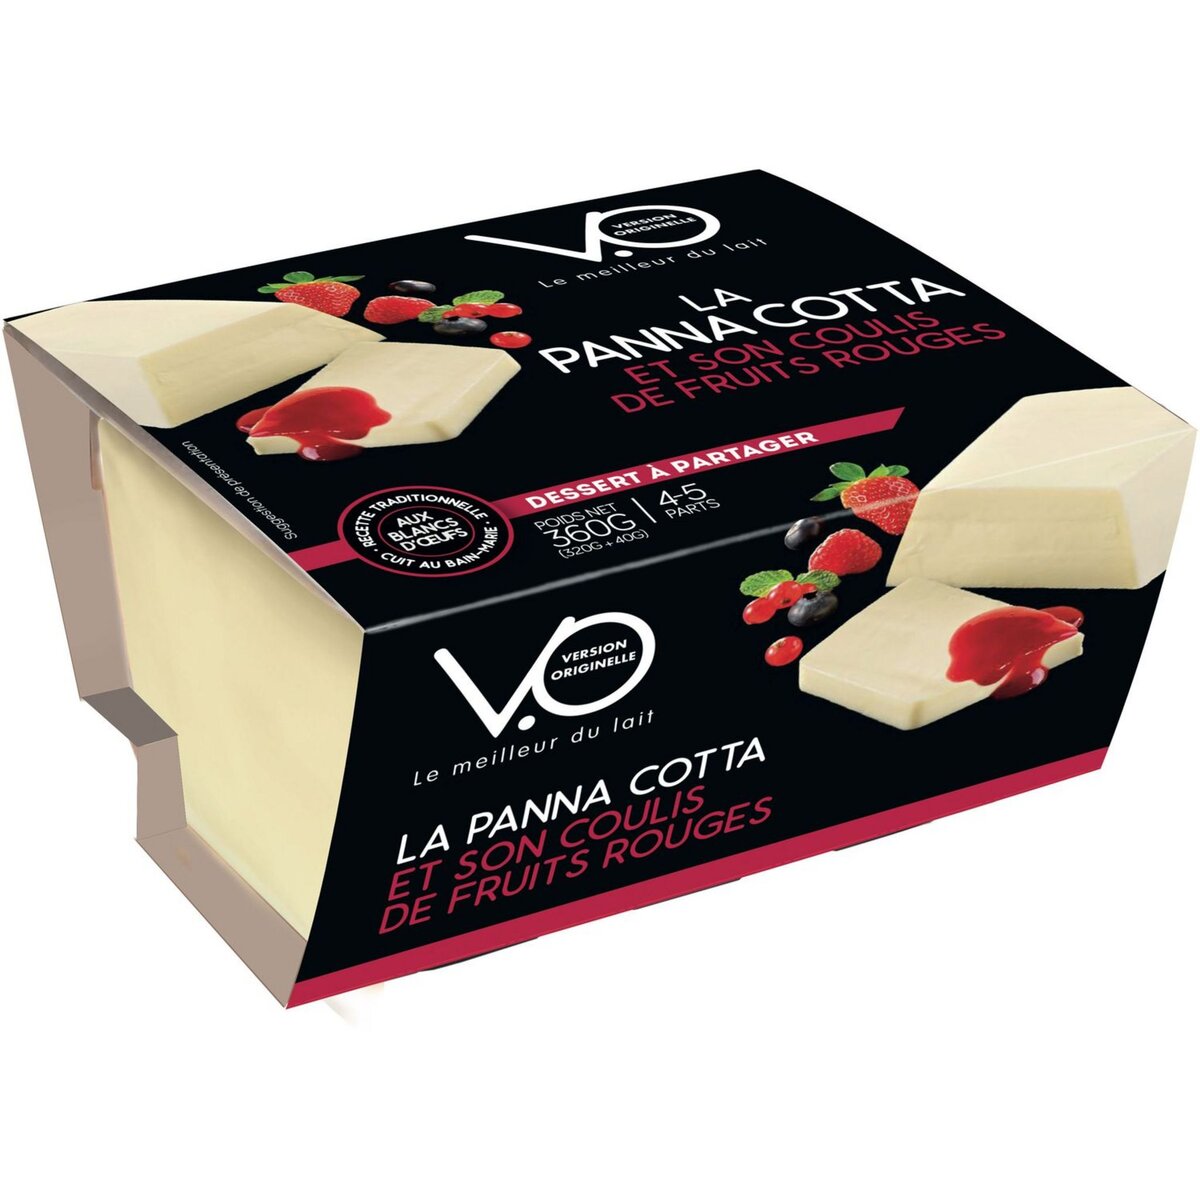 VO Panna cotta et son coulis de fruits rouges 4-5 parts 360g